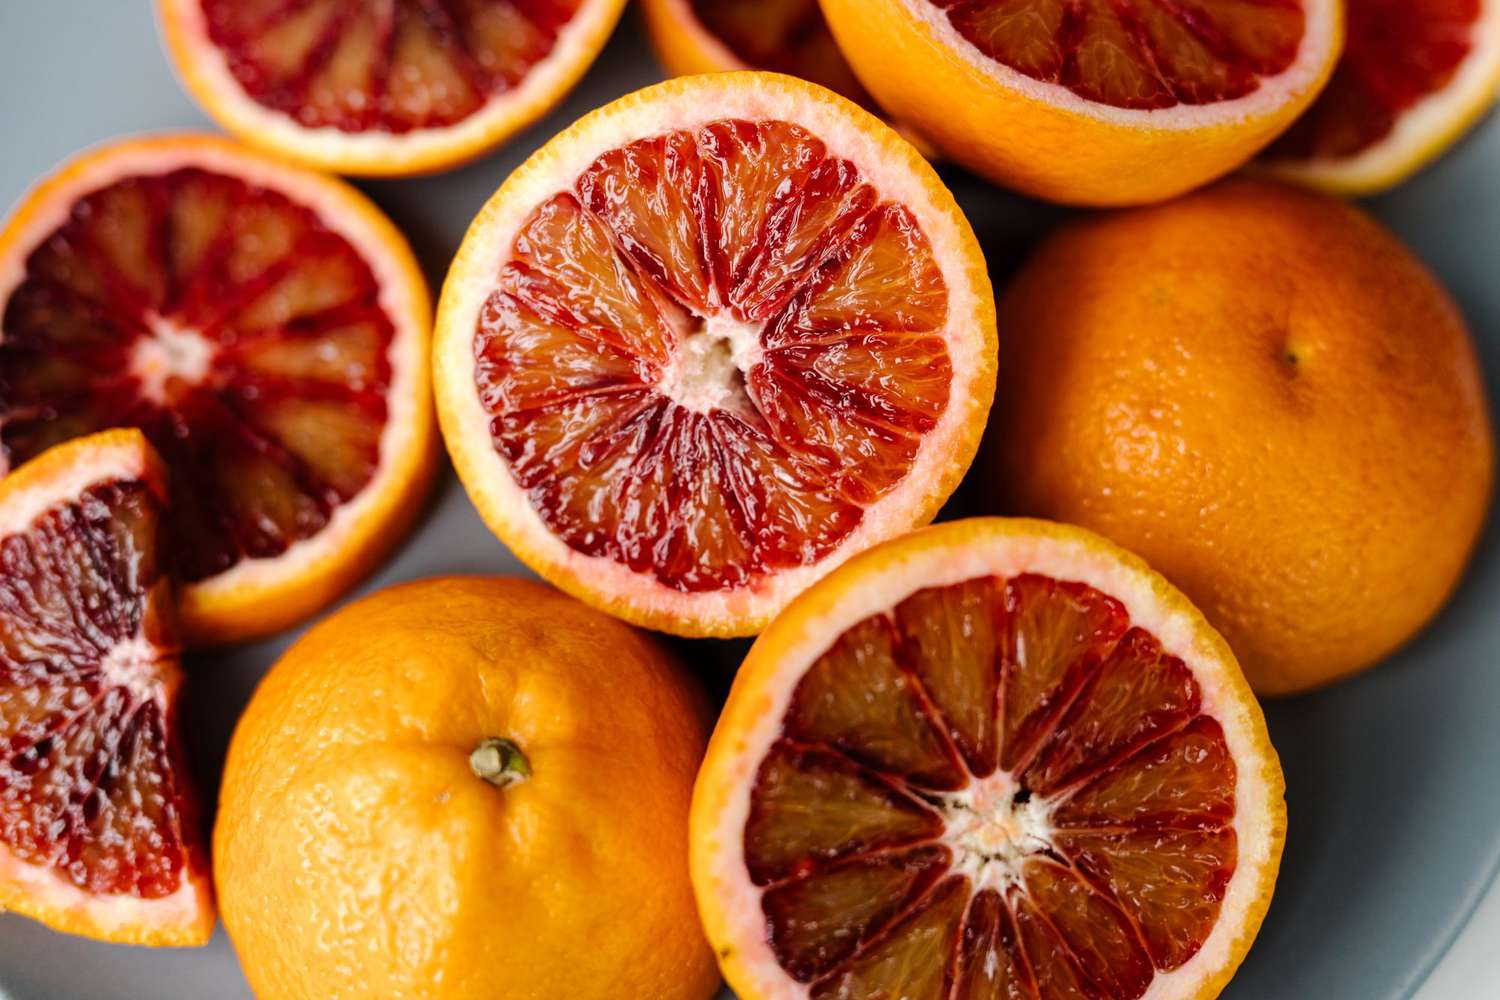 Blood oranges cut into halves